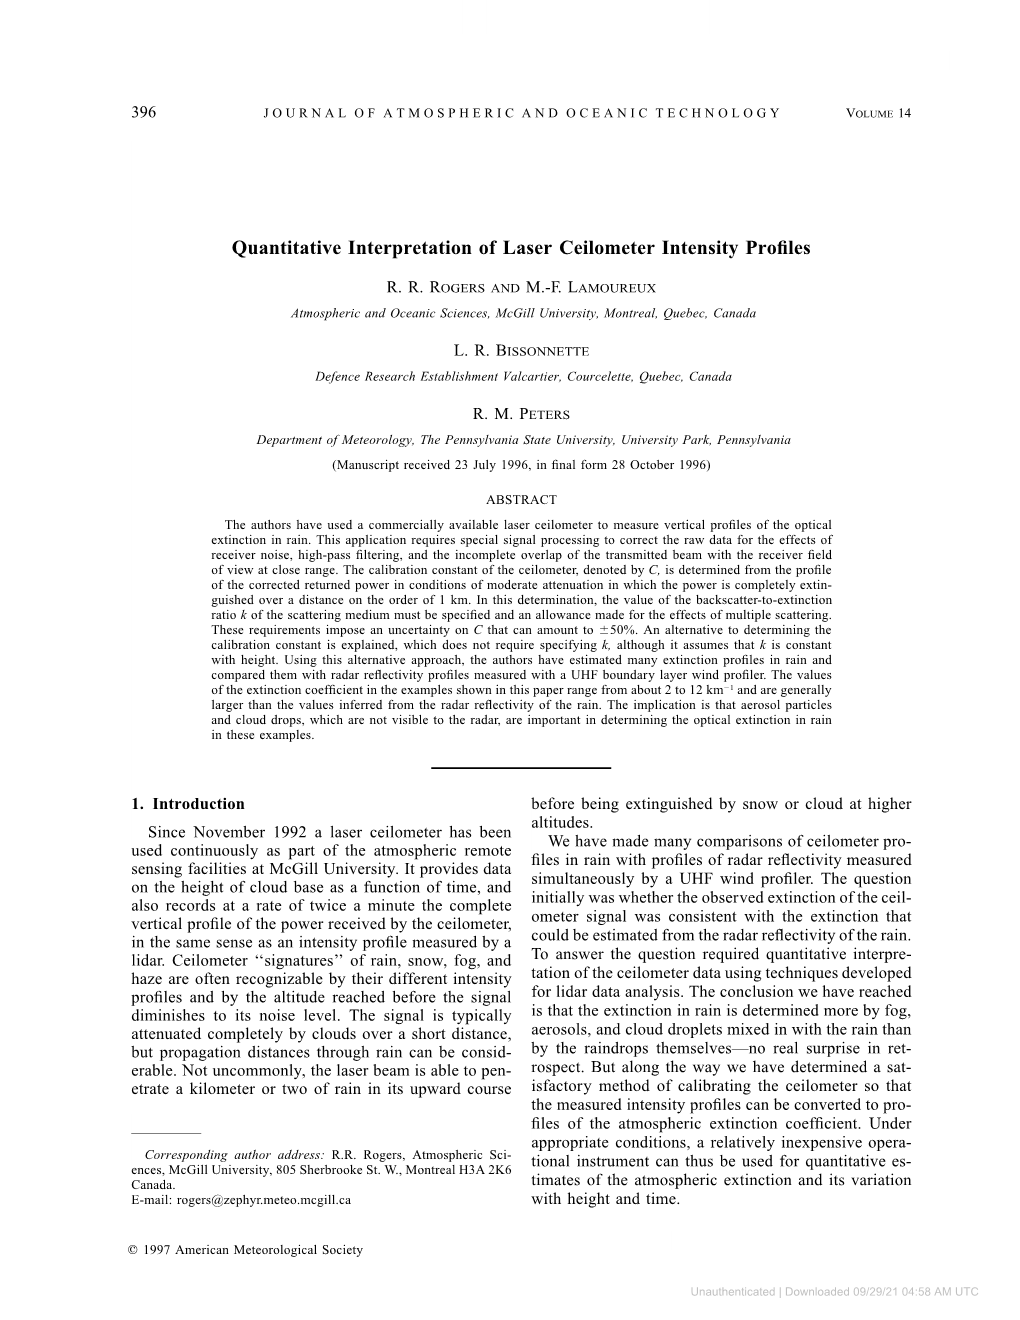 Quantitative Interpretation of Laser Ceilometer Intensity Profiles